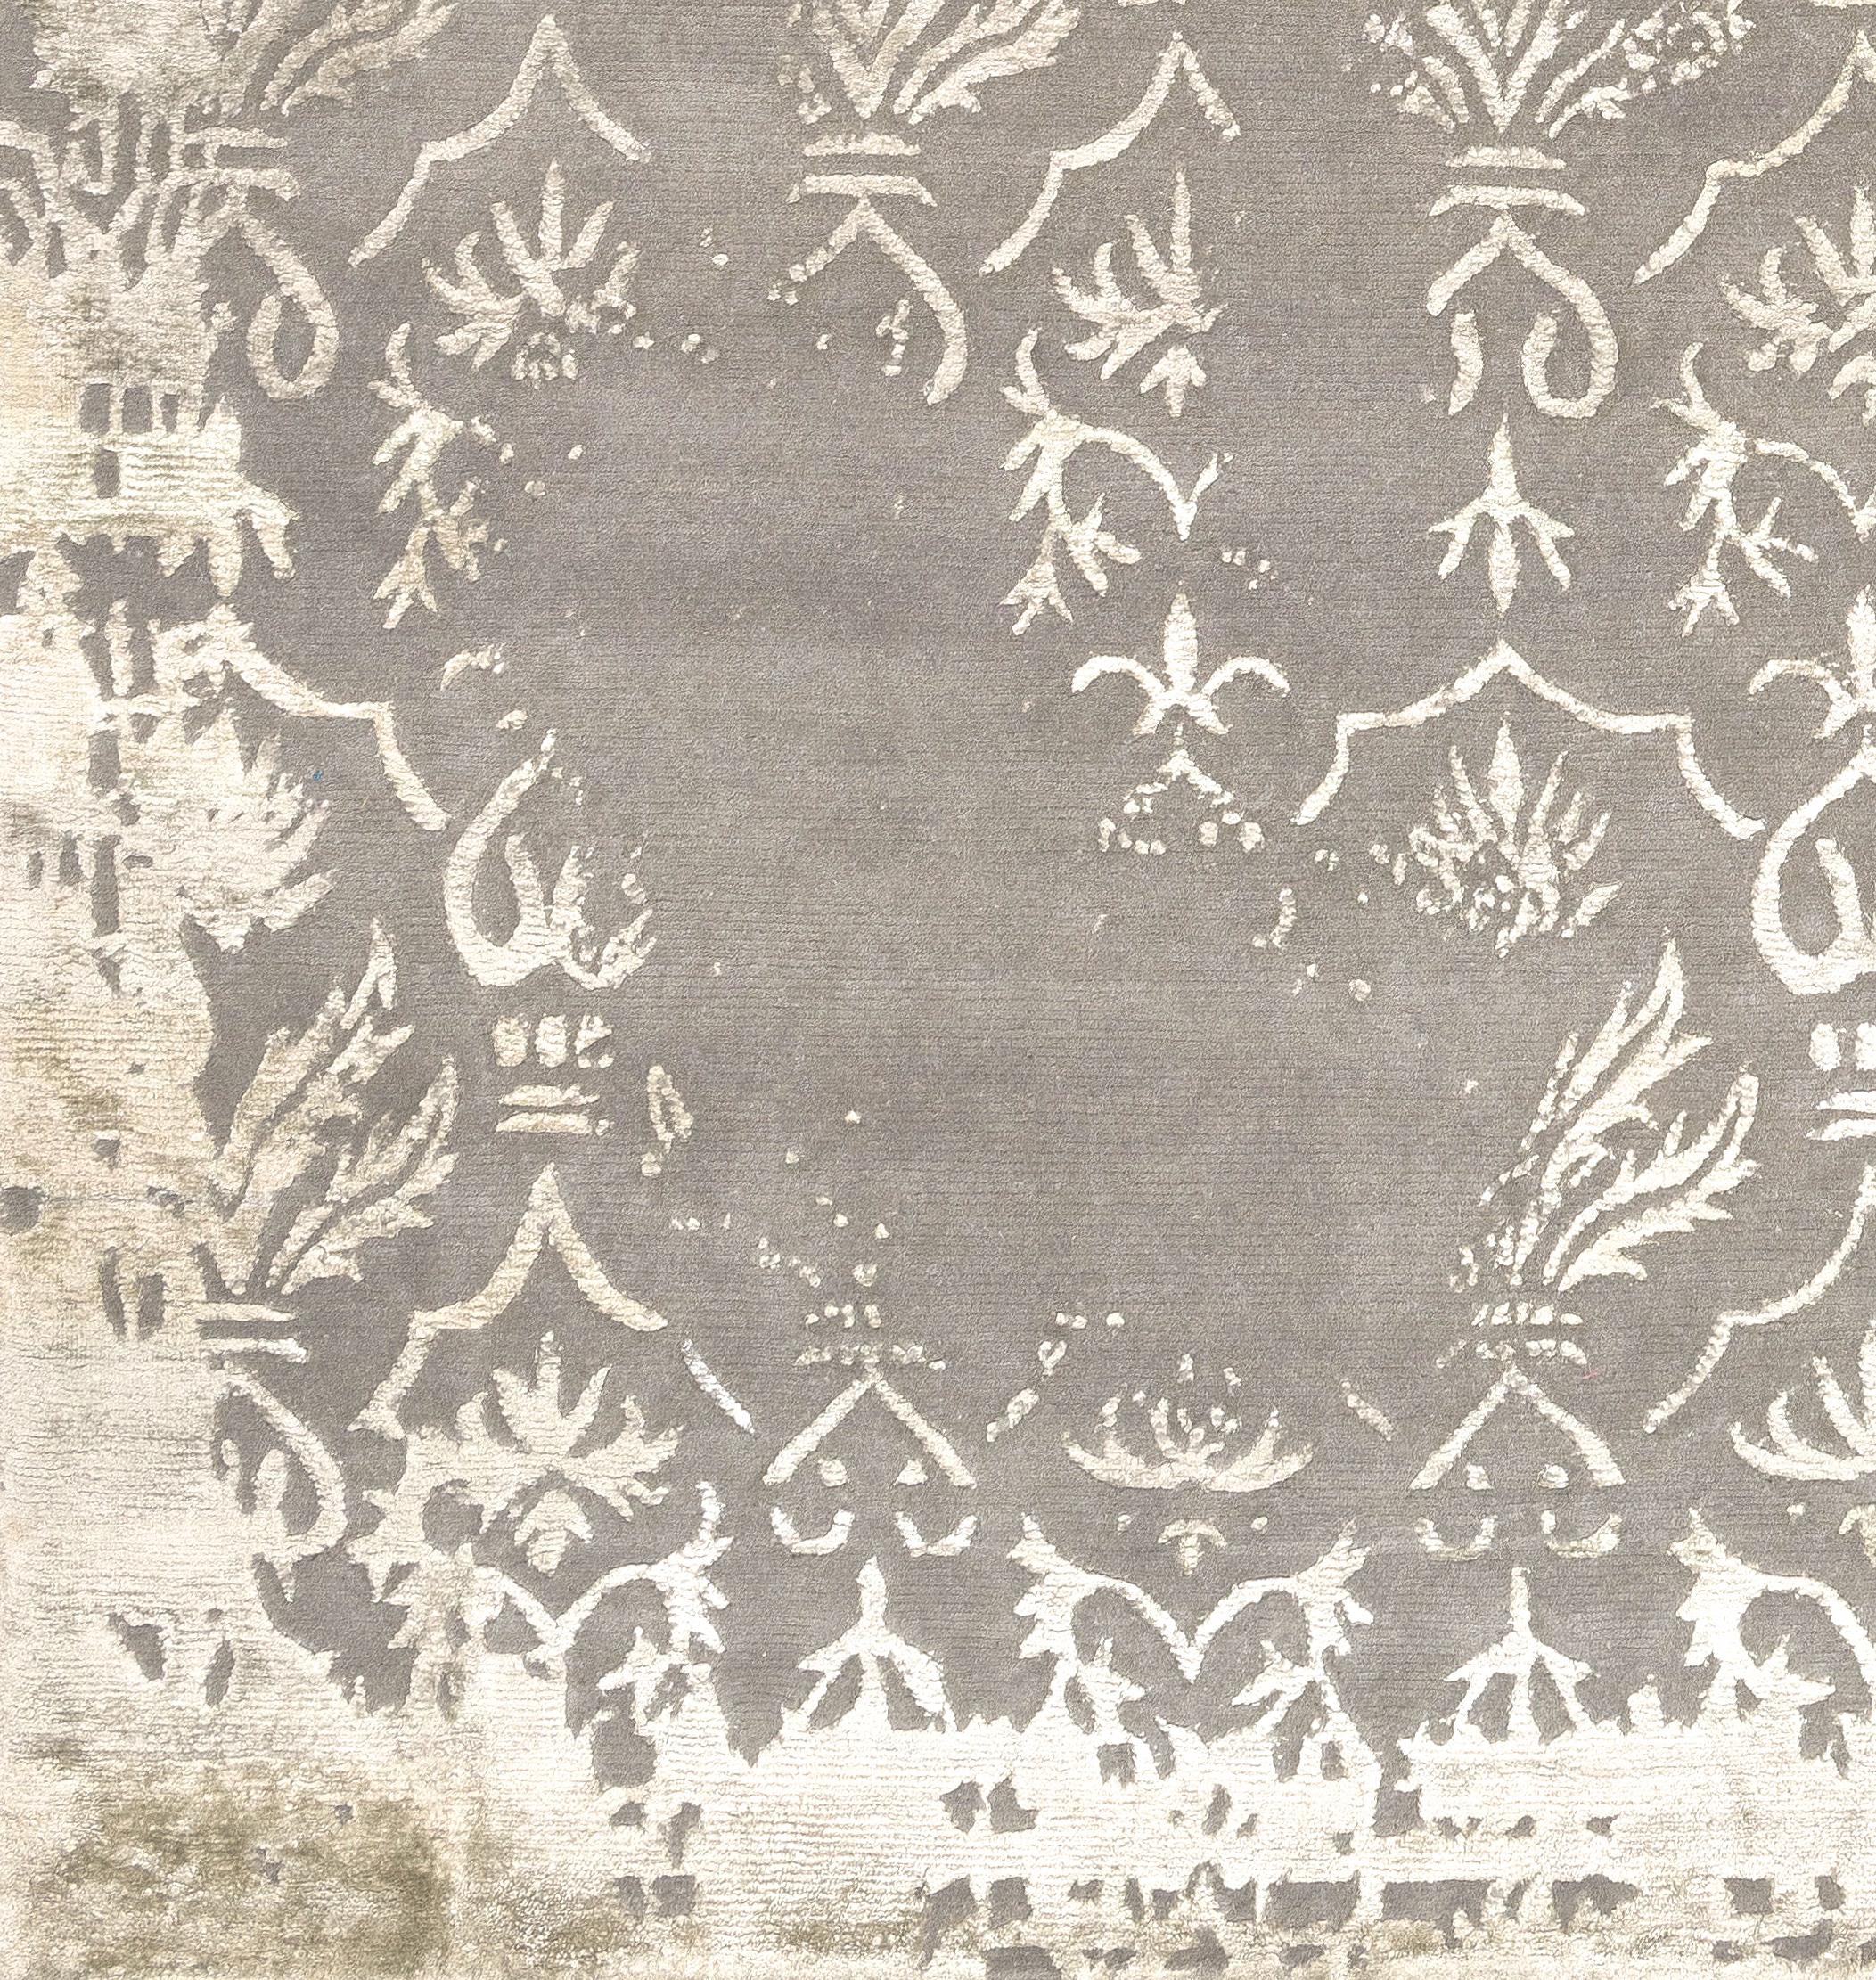 Verblasste Version des Damastes, klassisches Design, inspiriert von antiken Damastteppichen aus dem Nahen Osten aus der Illulian's Palace Collection.
Dieser Teppich wird in Nepal von unseren Kunsthandwerkern aus 50% Seide und 50% feiner